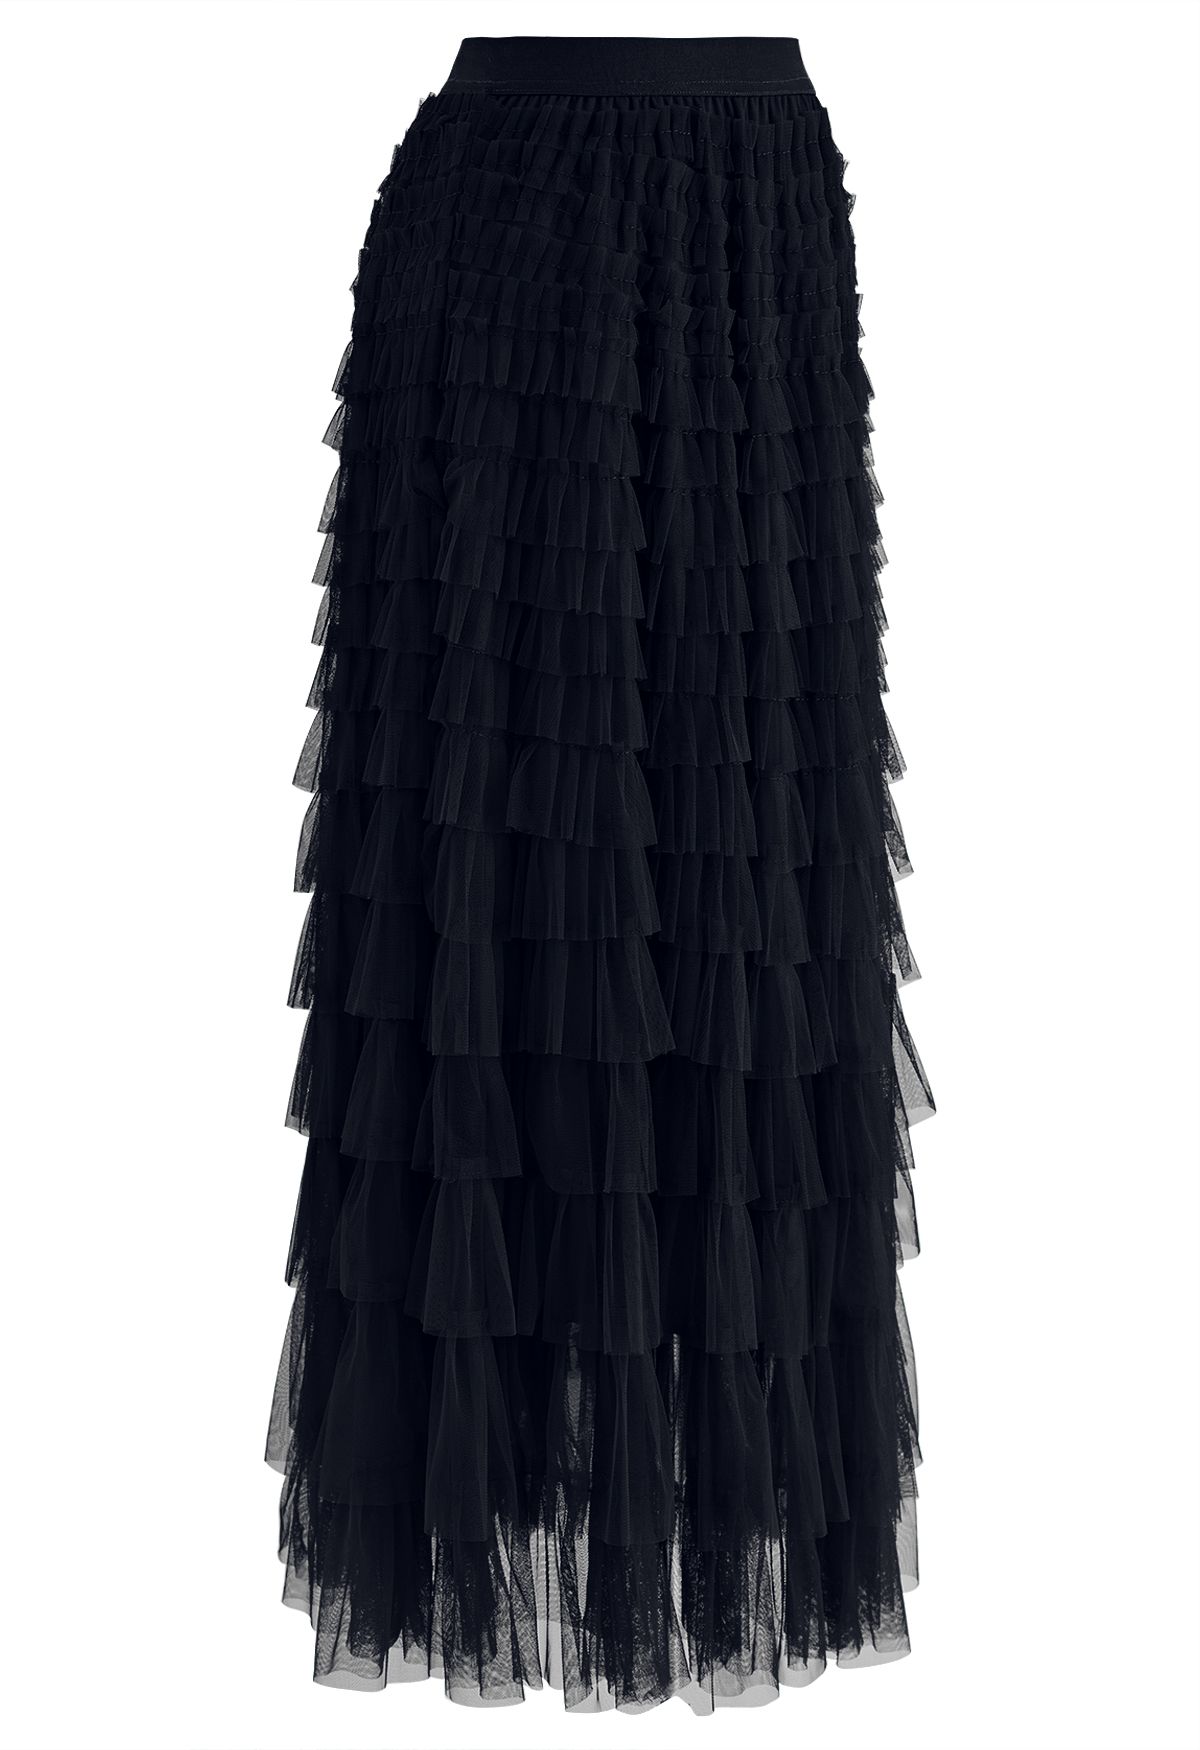 Swan Cloud Midi Skirt in Black